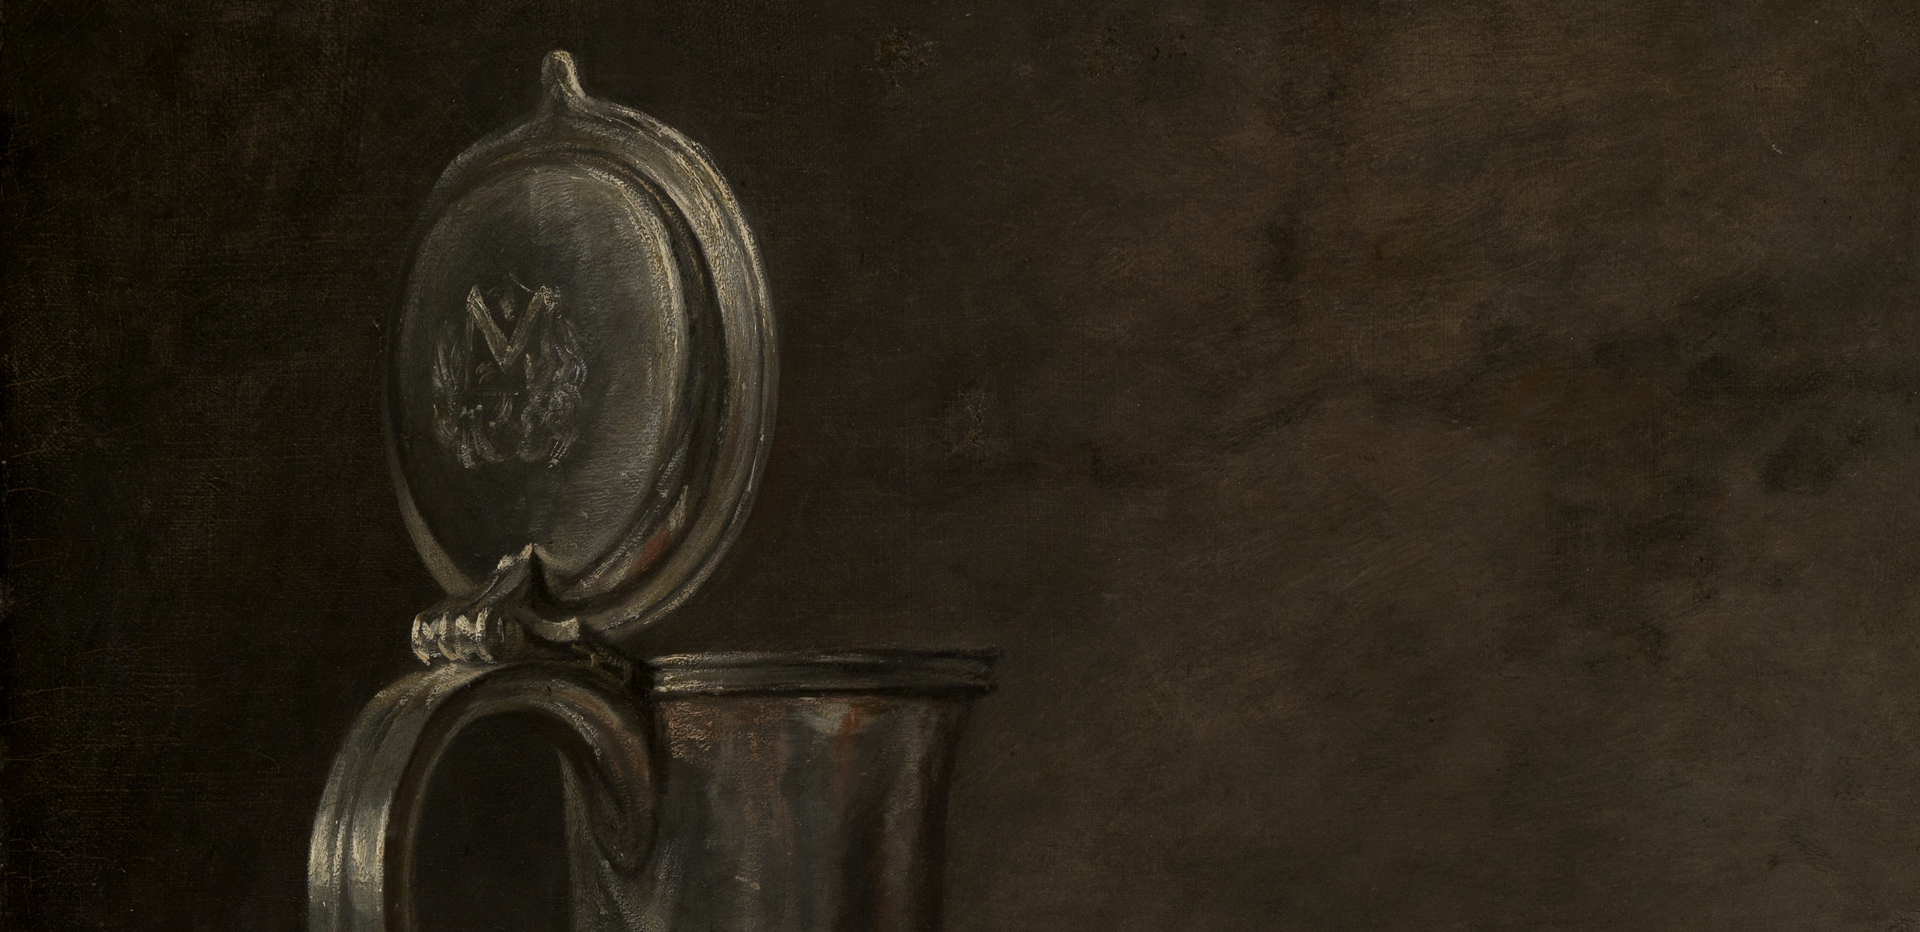 Detail aus Chardins Stillleben mit Zinnkrug. Nahansicht oberer Teil Zinnkrug, geöffneter Deckel zeigt Monogramm. Trockener Farbauftrag.